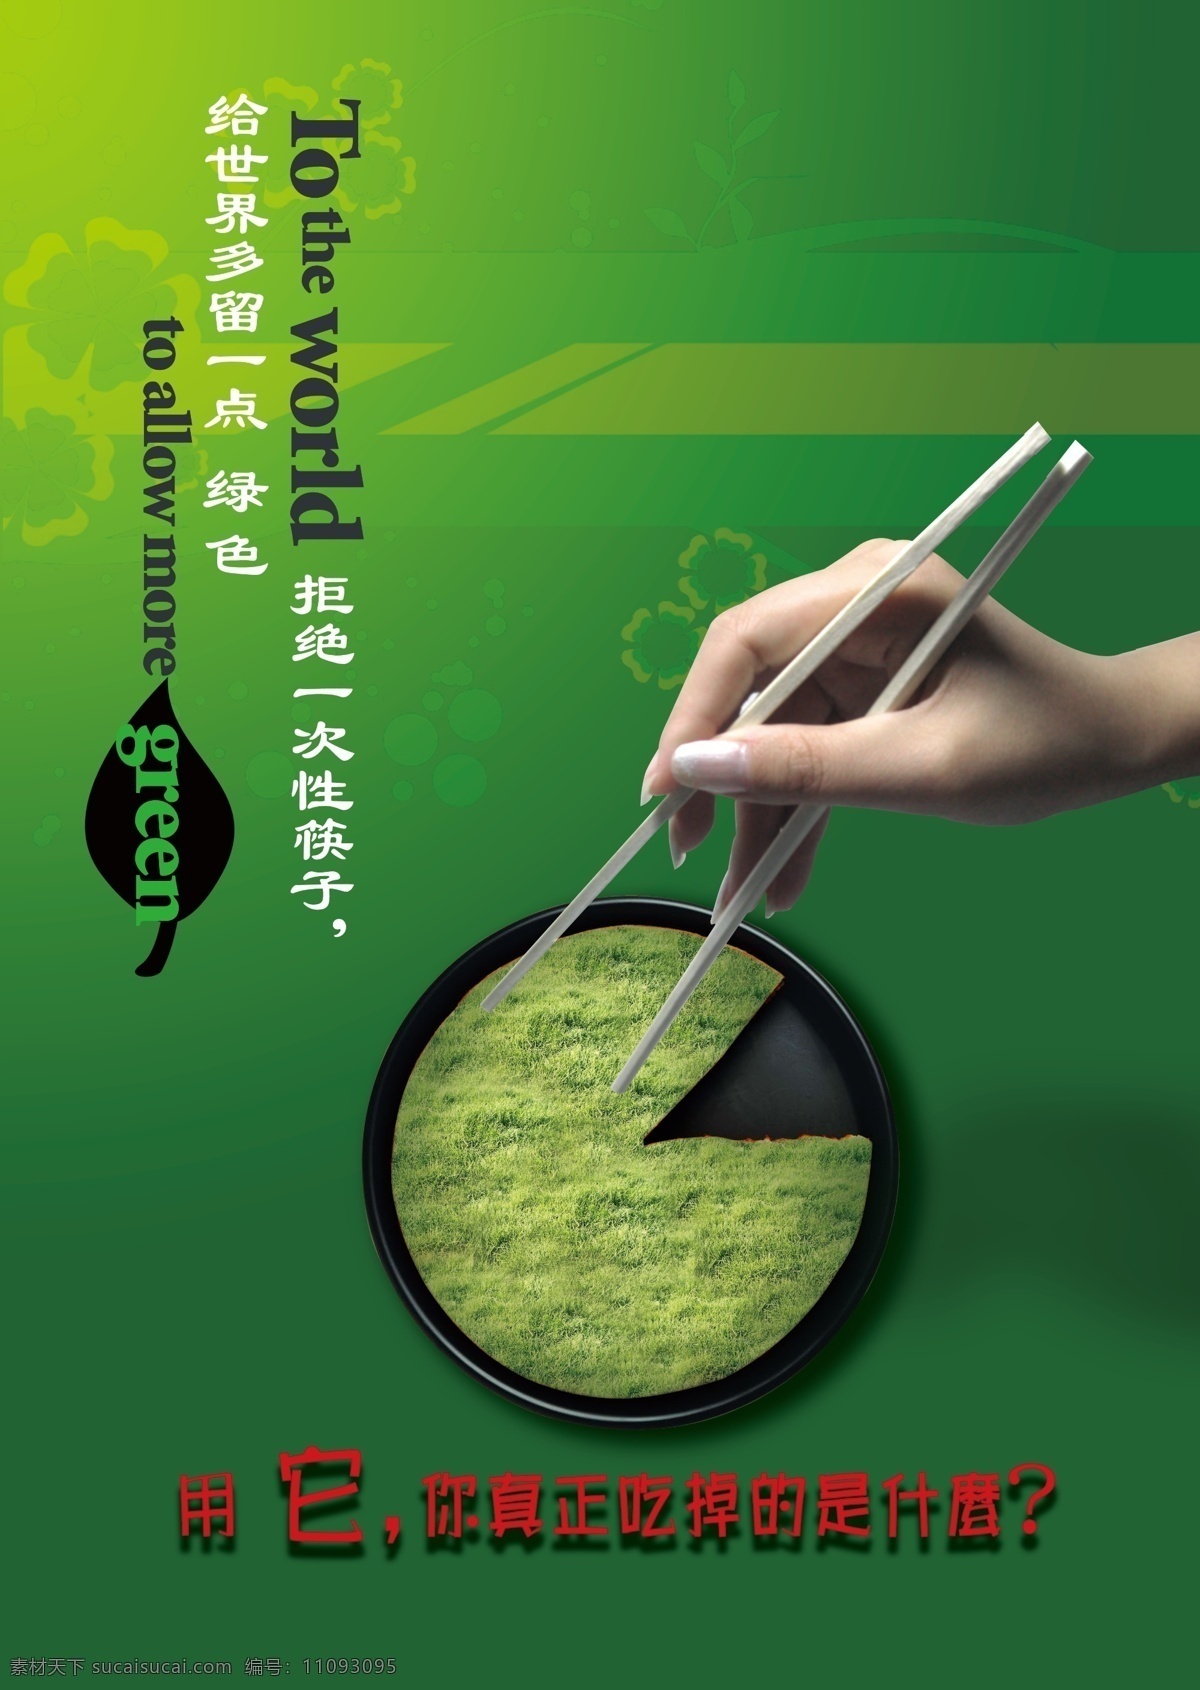 公益海报 公益 海报 模板下载 广告设计模板 环保 绿色 手 源文件 一次性筷子 卫生筷 环保公益海报